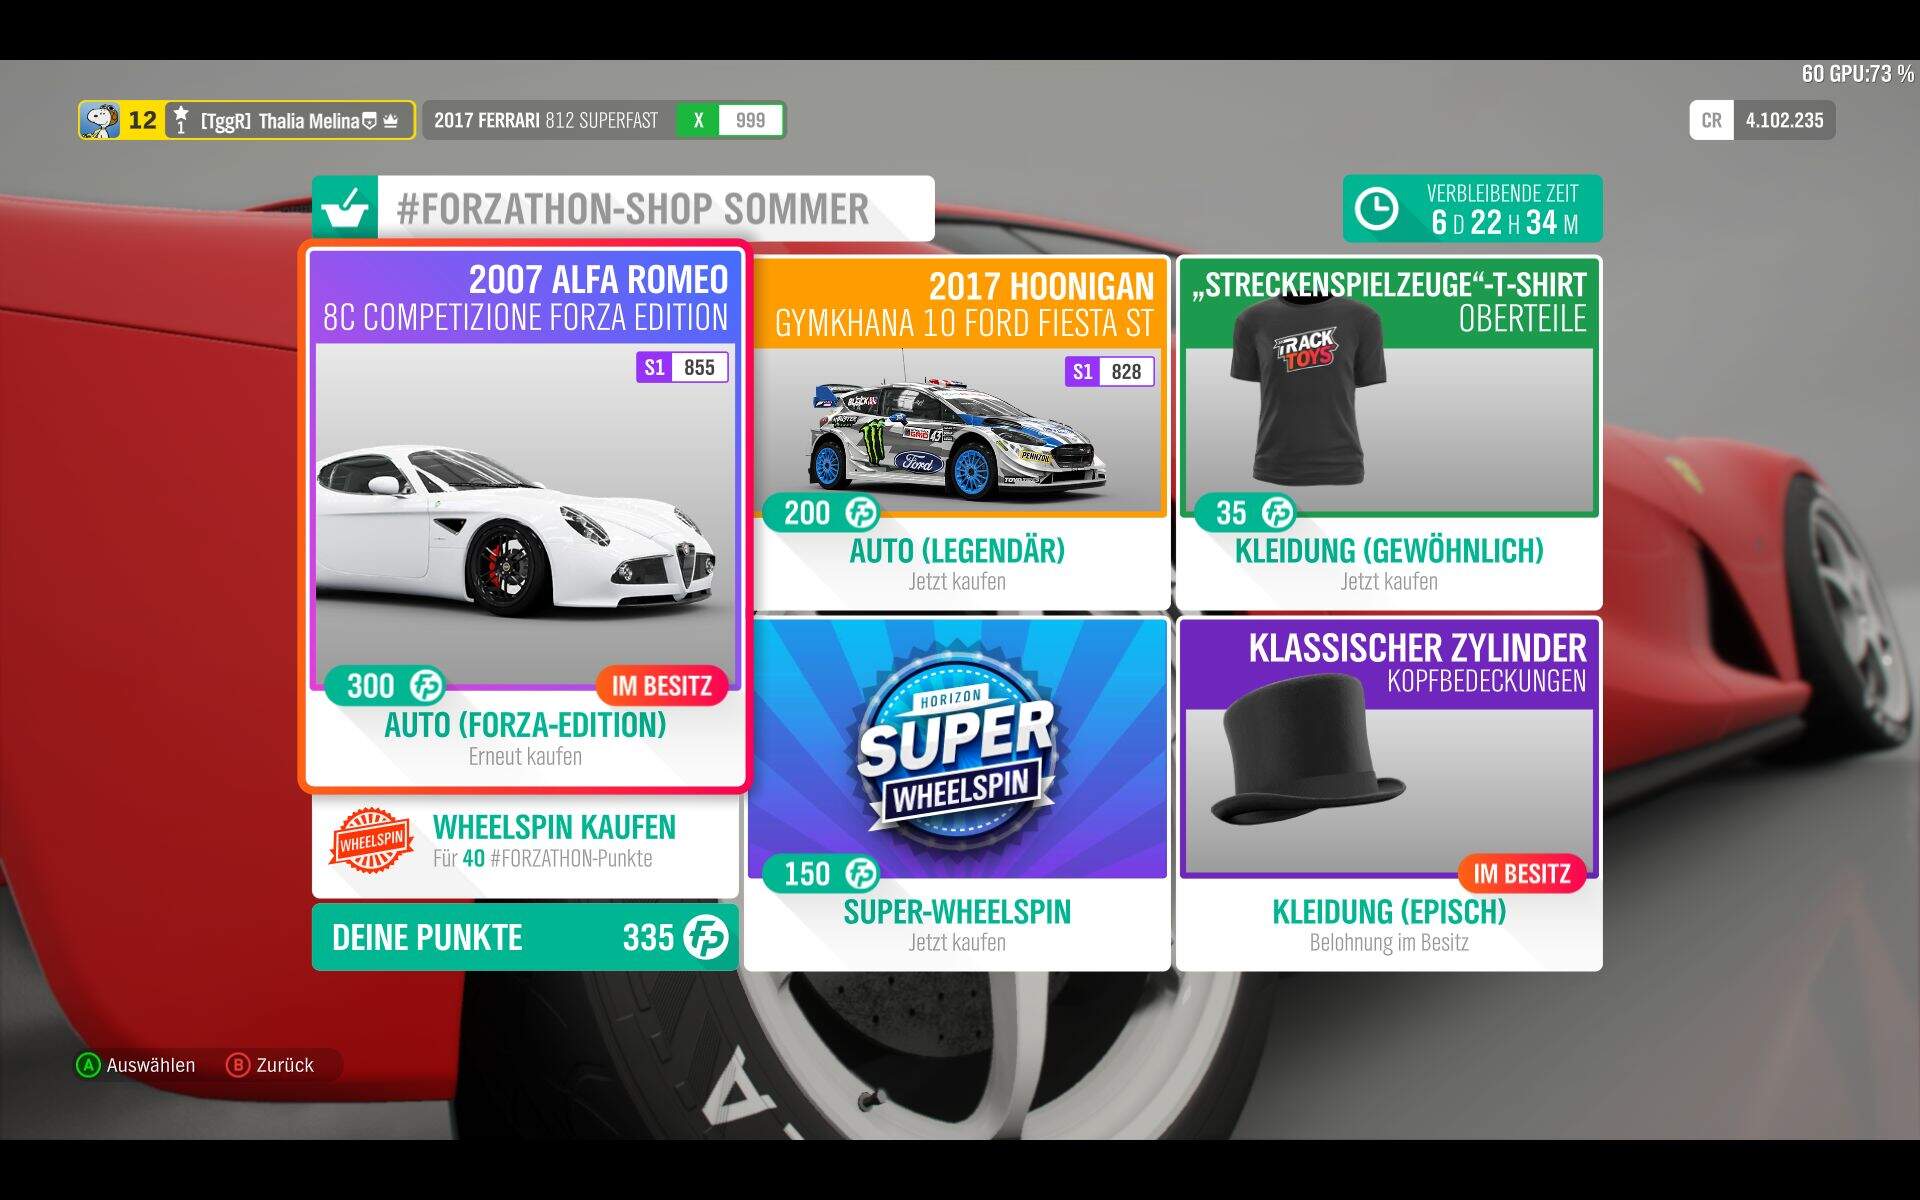 Forza Horizon 4 #Forzathon-Shop KW 47